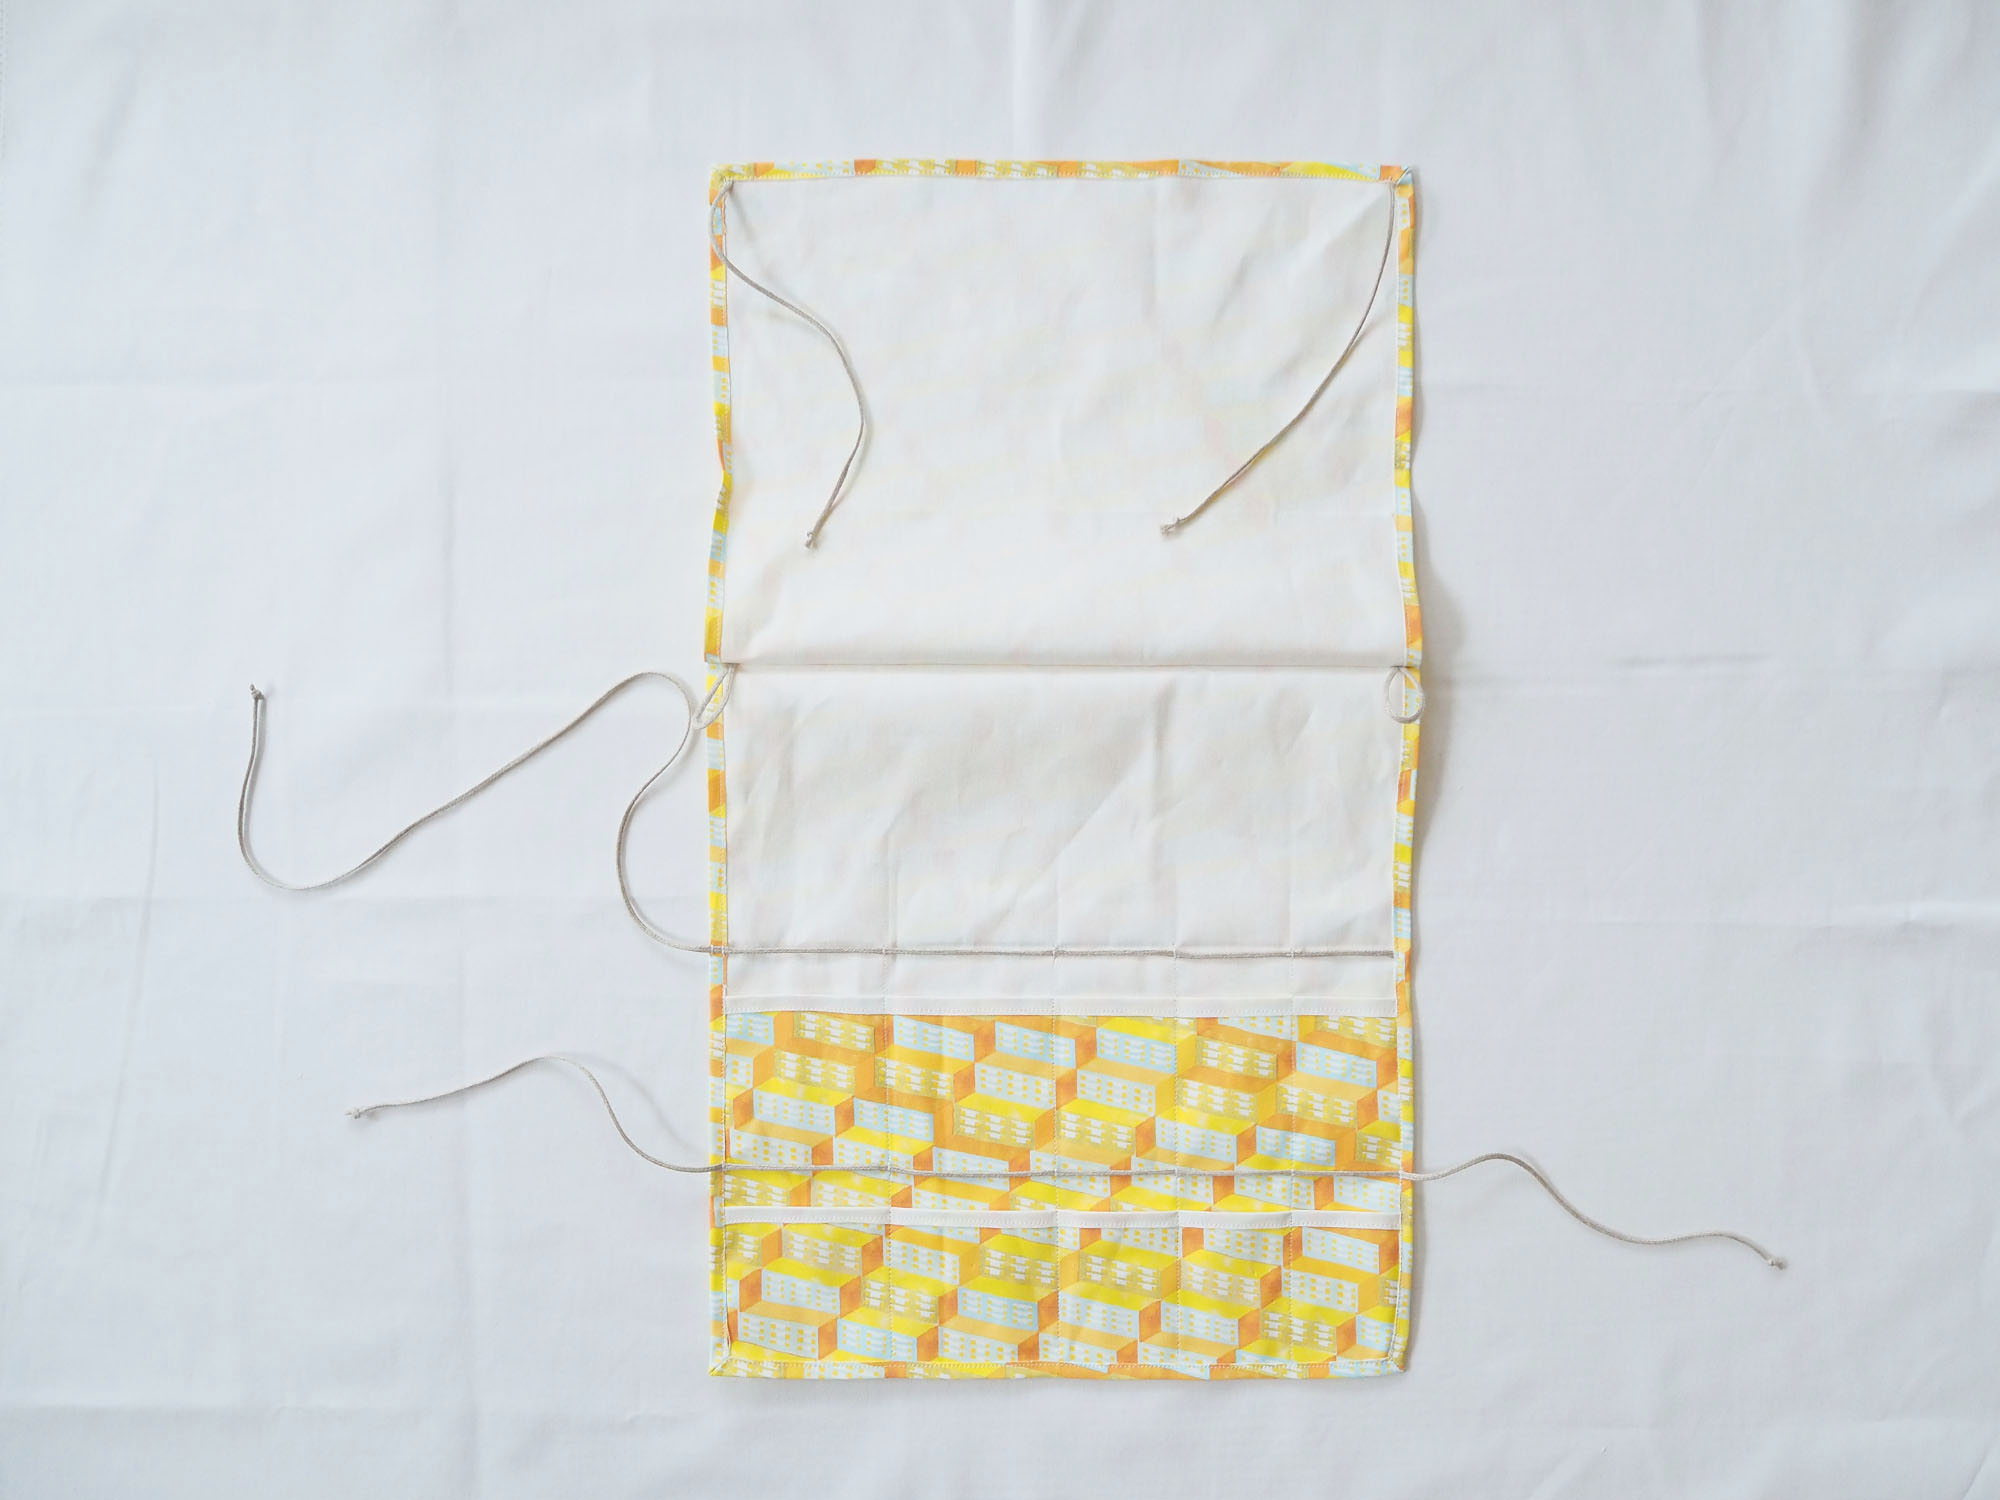 キャンプ道具 裁縫道具 工具入れにも 何でも入れて持ち歩けるツールロールケースの作り方 Nunocoto Fabric